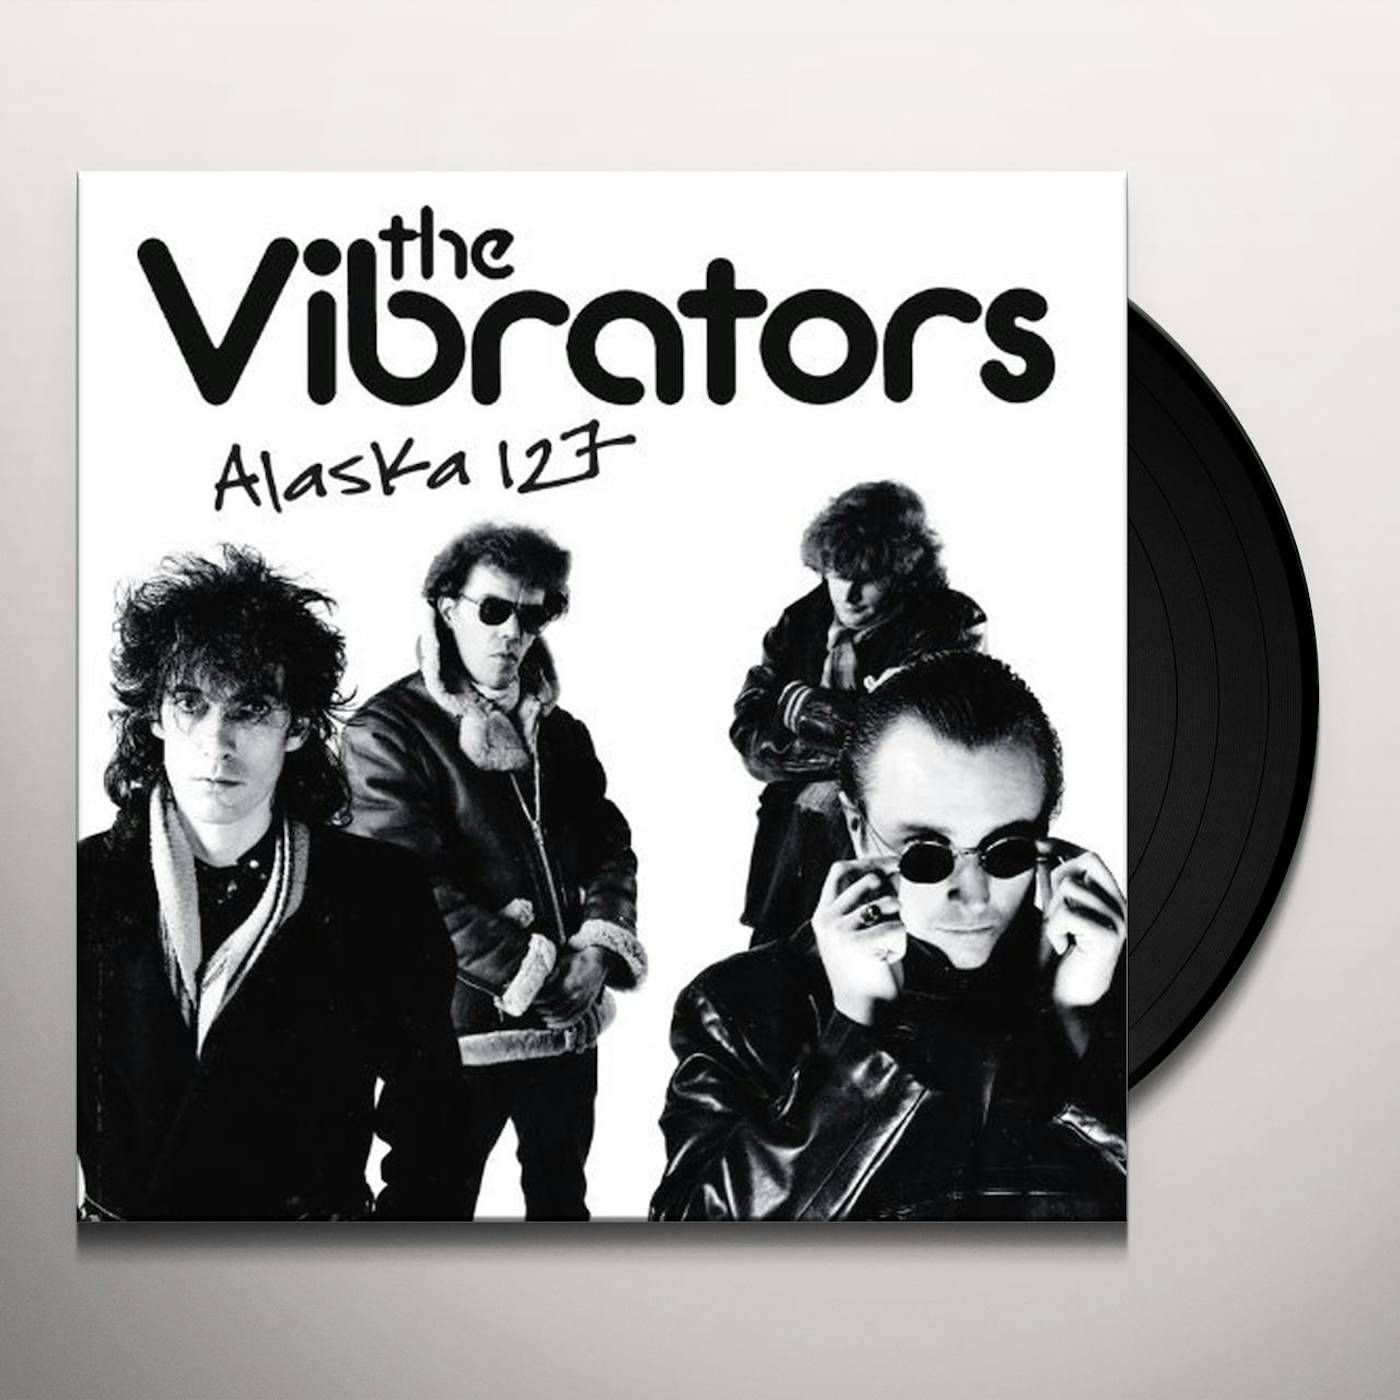 The Vibrators Alaska 127 Vinyl Record